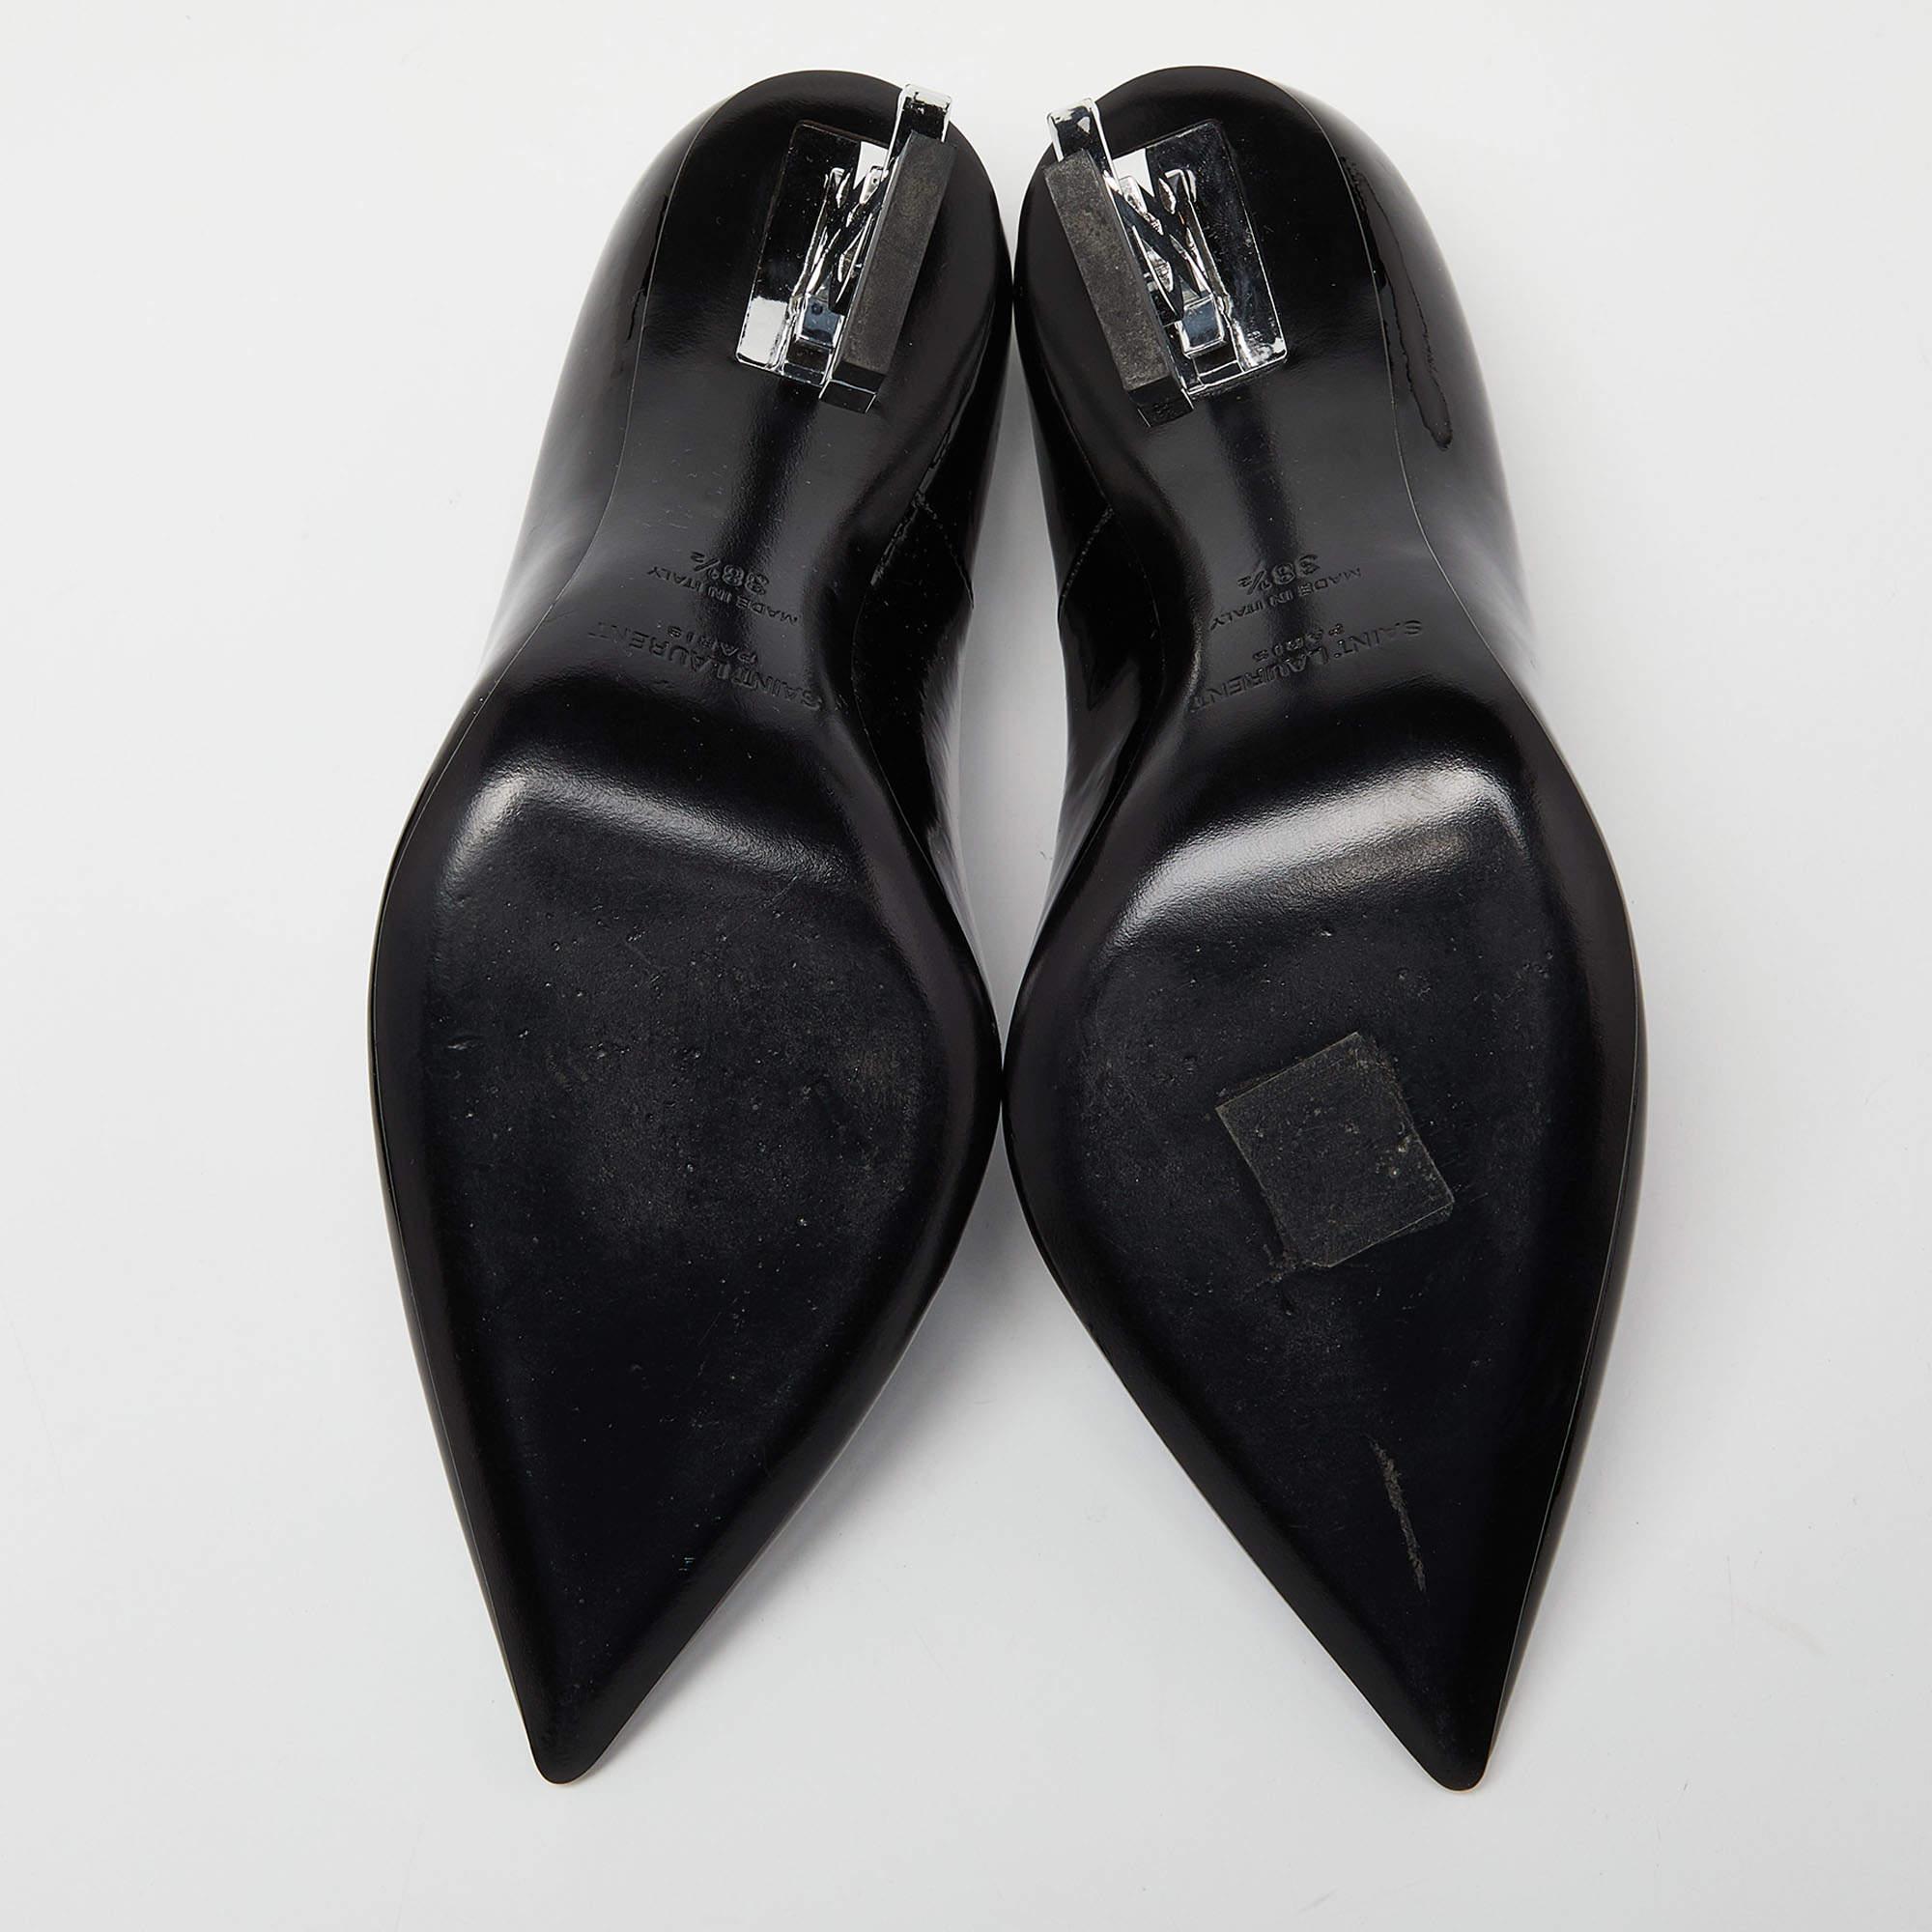 Saint Laurent Black Patent Leather Opyum Pumps Size 38.5 5